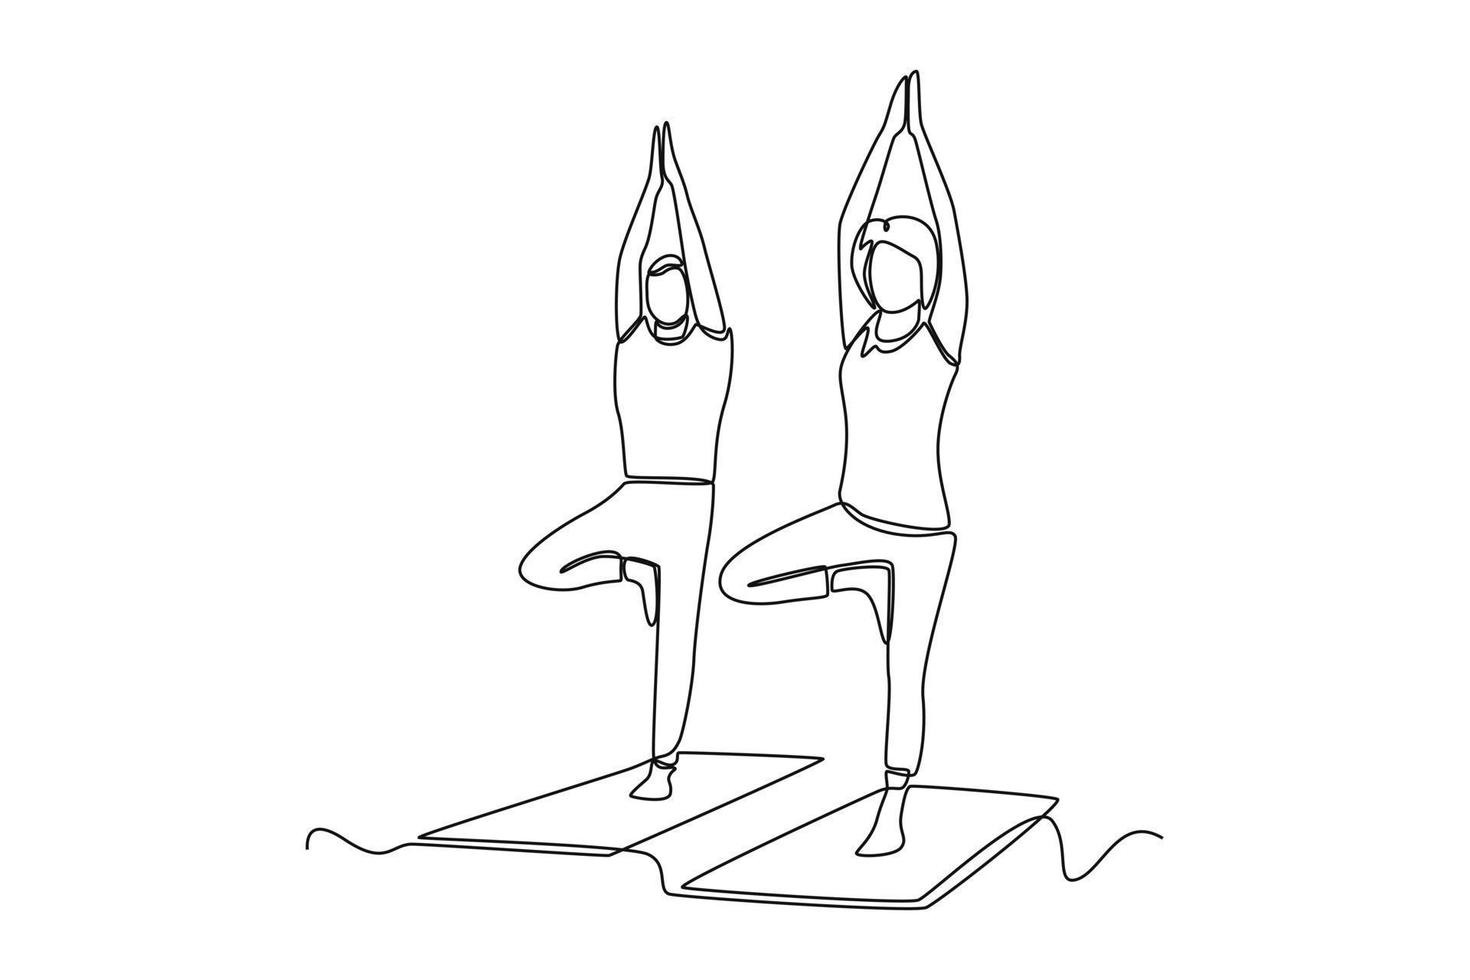 kontinuierlich einer Linie Zeichnung Yoga Klasse Sitzung. Klasse im Aktion Konzept. Single Linie zeichnen Design Vektor Grafik Illustration.